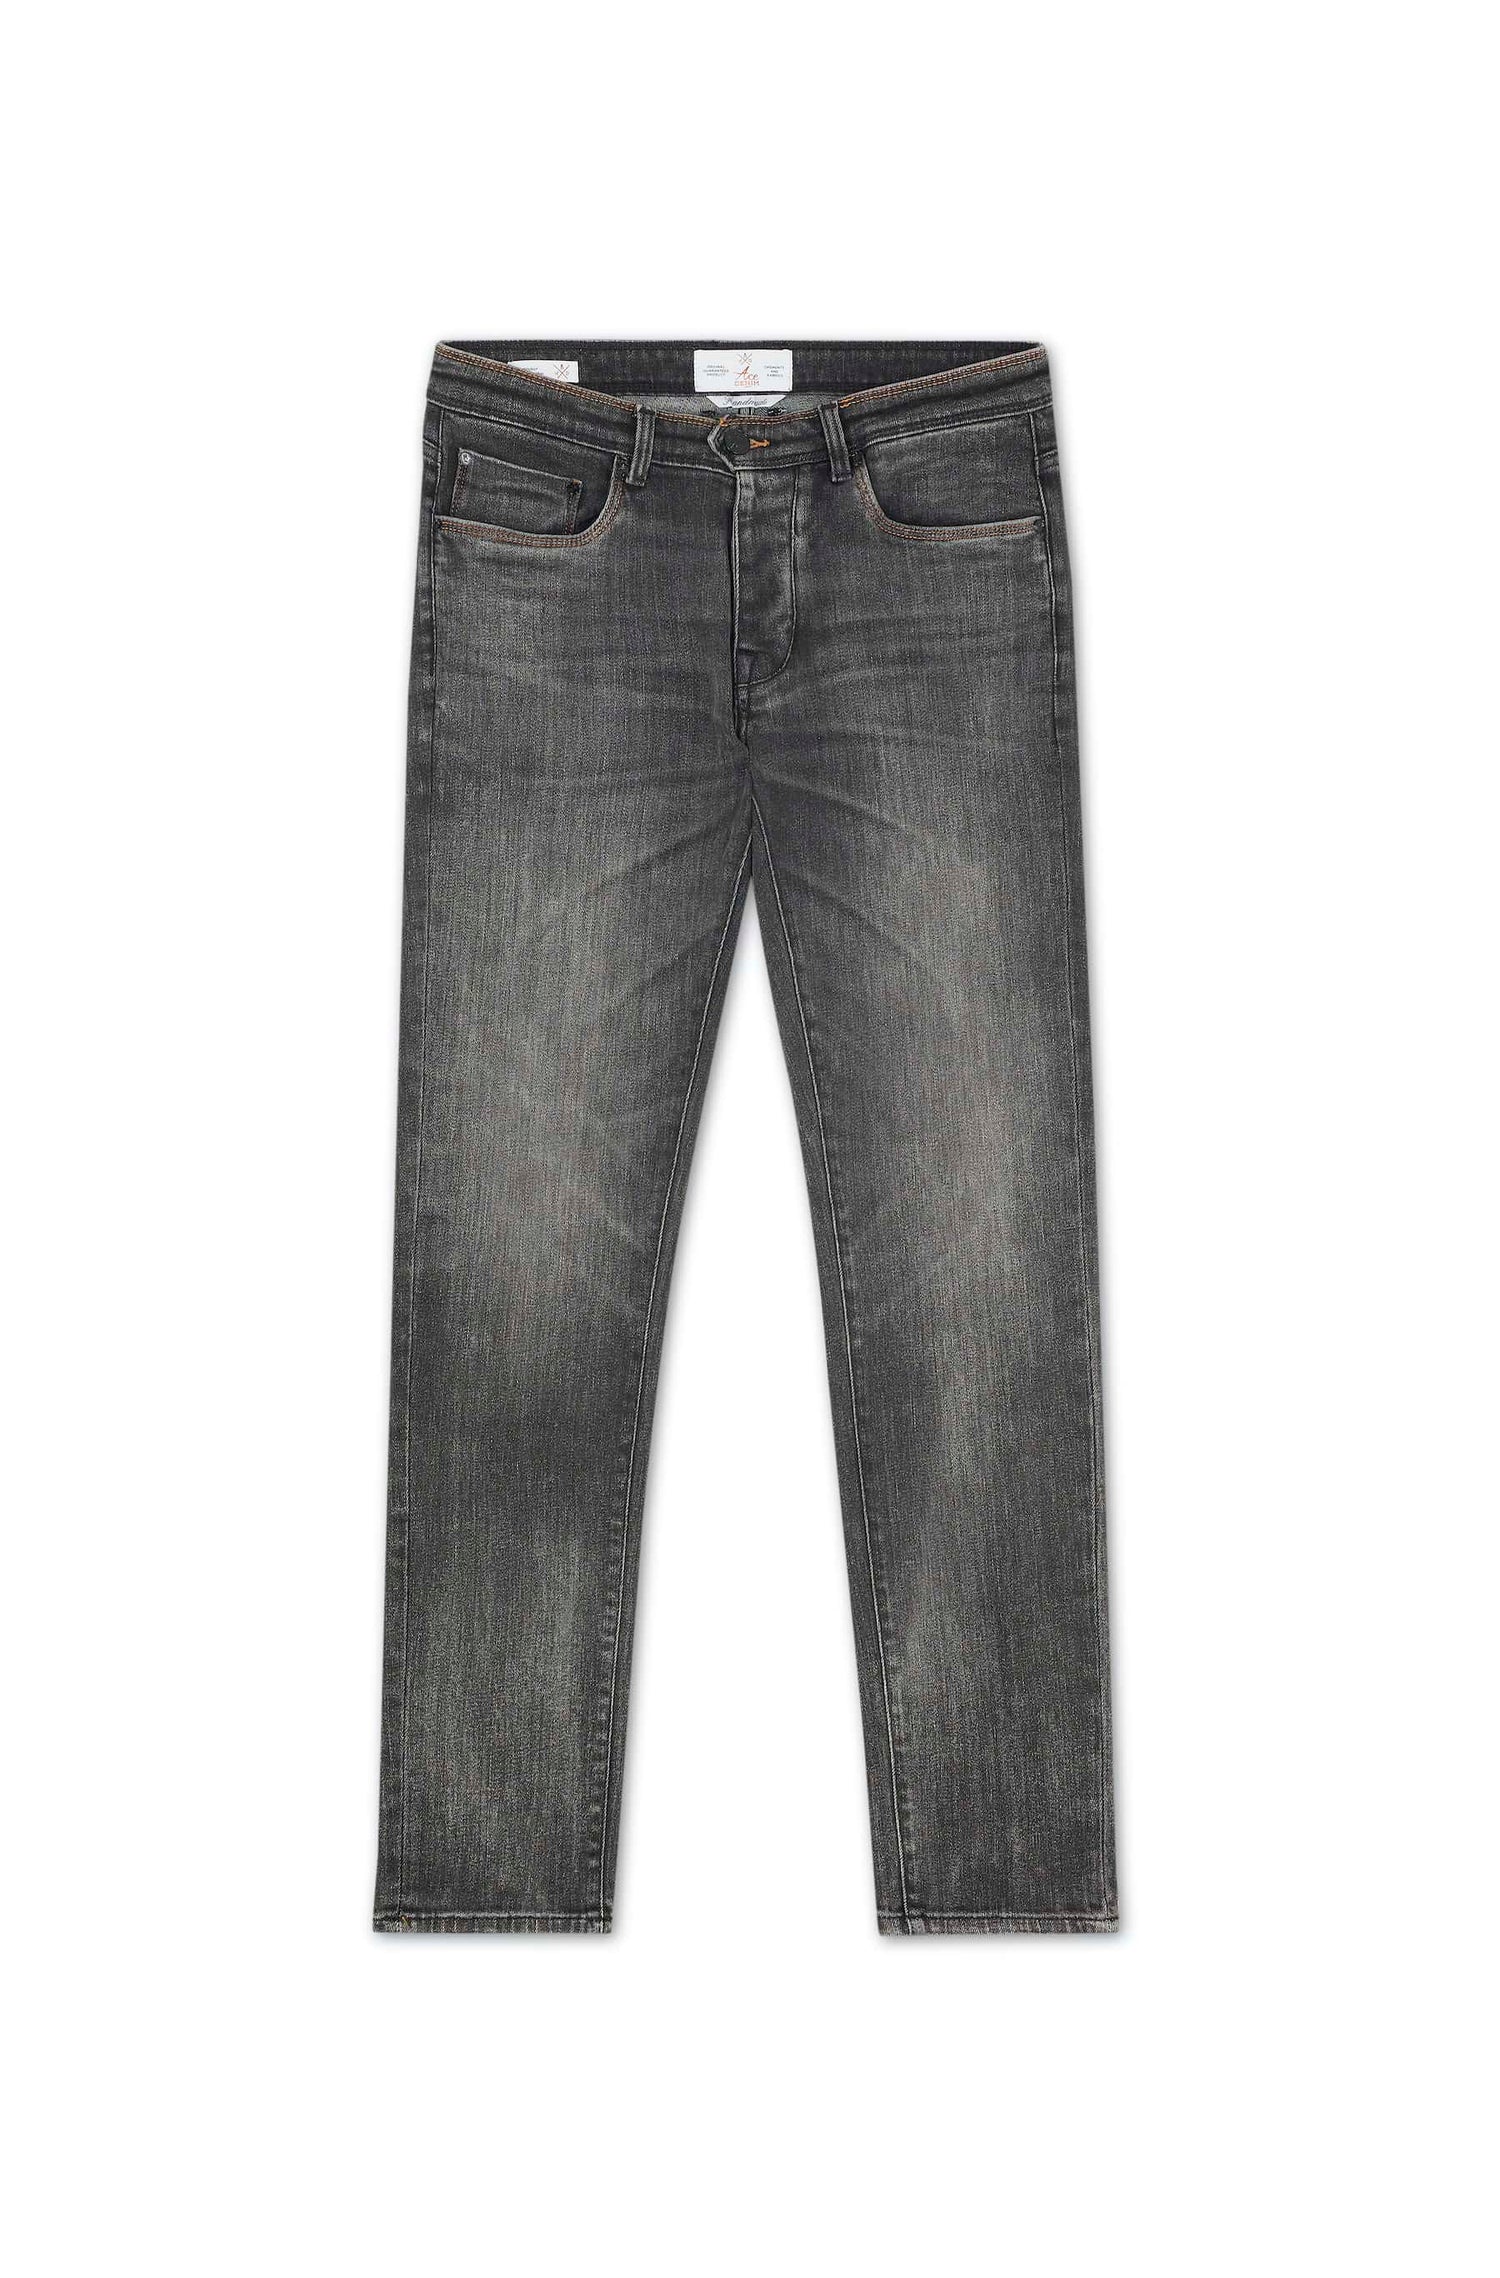 jeans homme gris foncé coupe straight